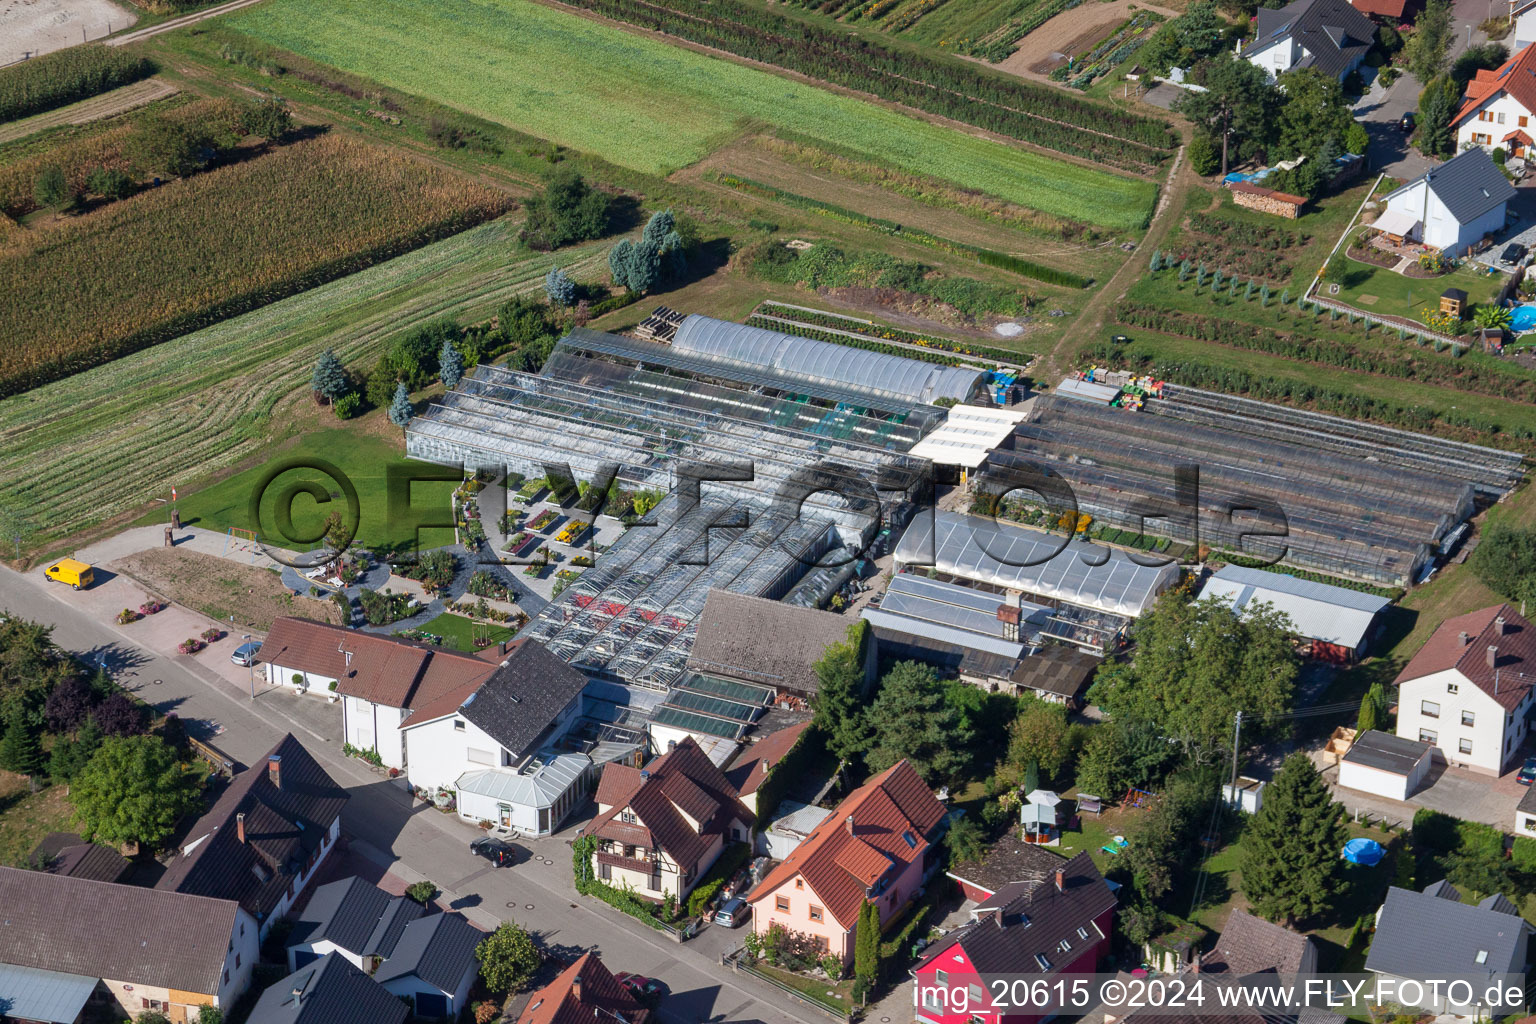 Luftbild von Glasdach- Flächen in den Gewächshausreihen zur Blumenzucht der 1A Gartet Hopp im Ortsteil Bodersweier in Kehl im Bundesland Baden-Württemberg, Deutschland